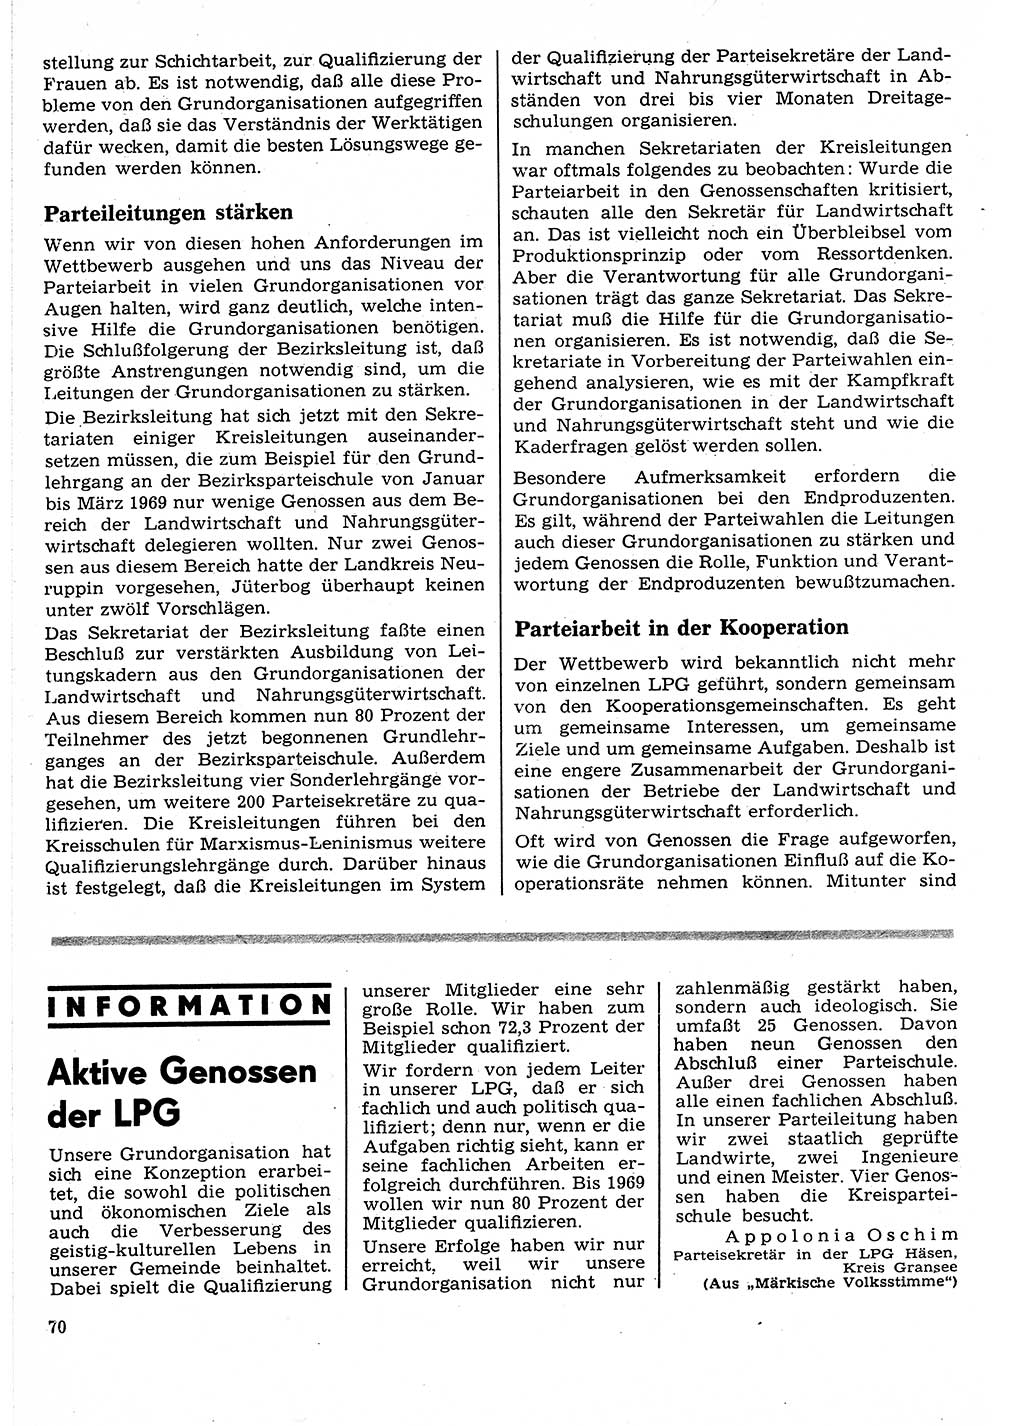 Neuer Weg (NW), Organ des Zentralkomitees (ZK) der SED (Sozialistische Einheitspartei Deutschlands) für Fragen des Parteilebens, 24. Jahrgang [Deutsche Demokratische Republik (DDR)] 1969, Seite 70 (NW ZK SED DDR 1969, S. 70)